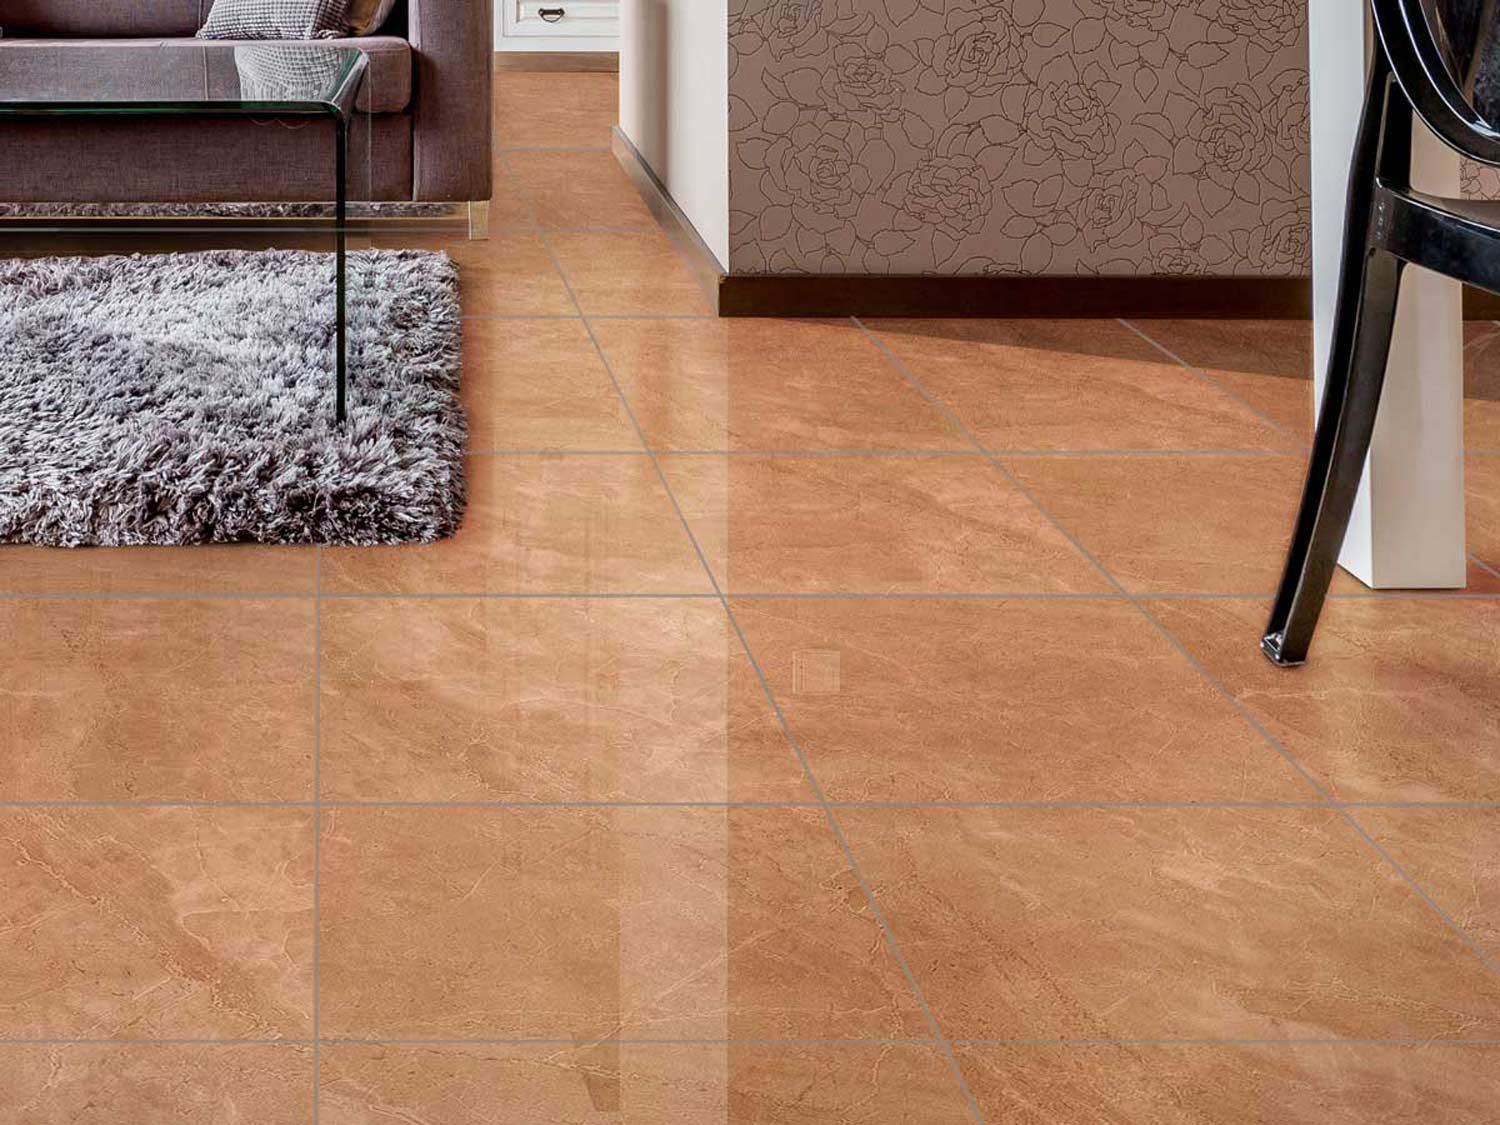 Shiny Floor Tiles For Living Room